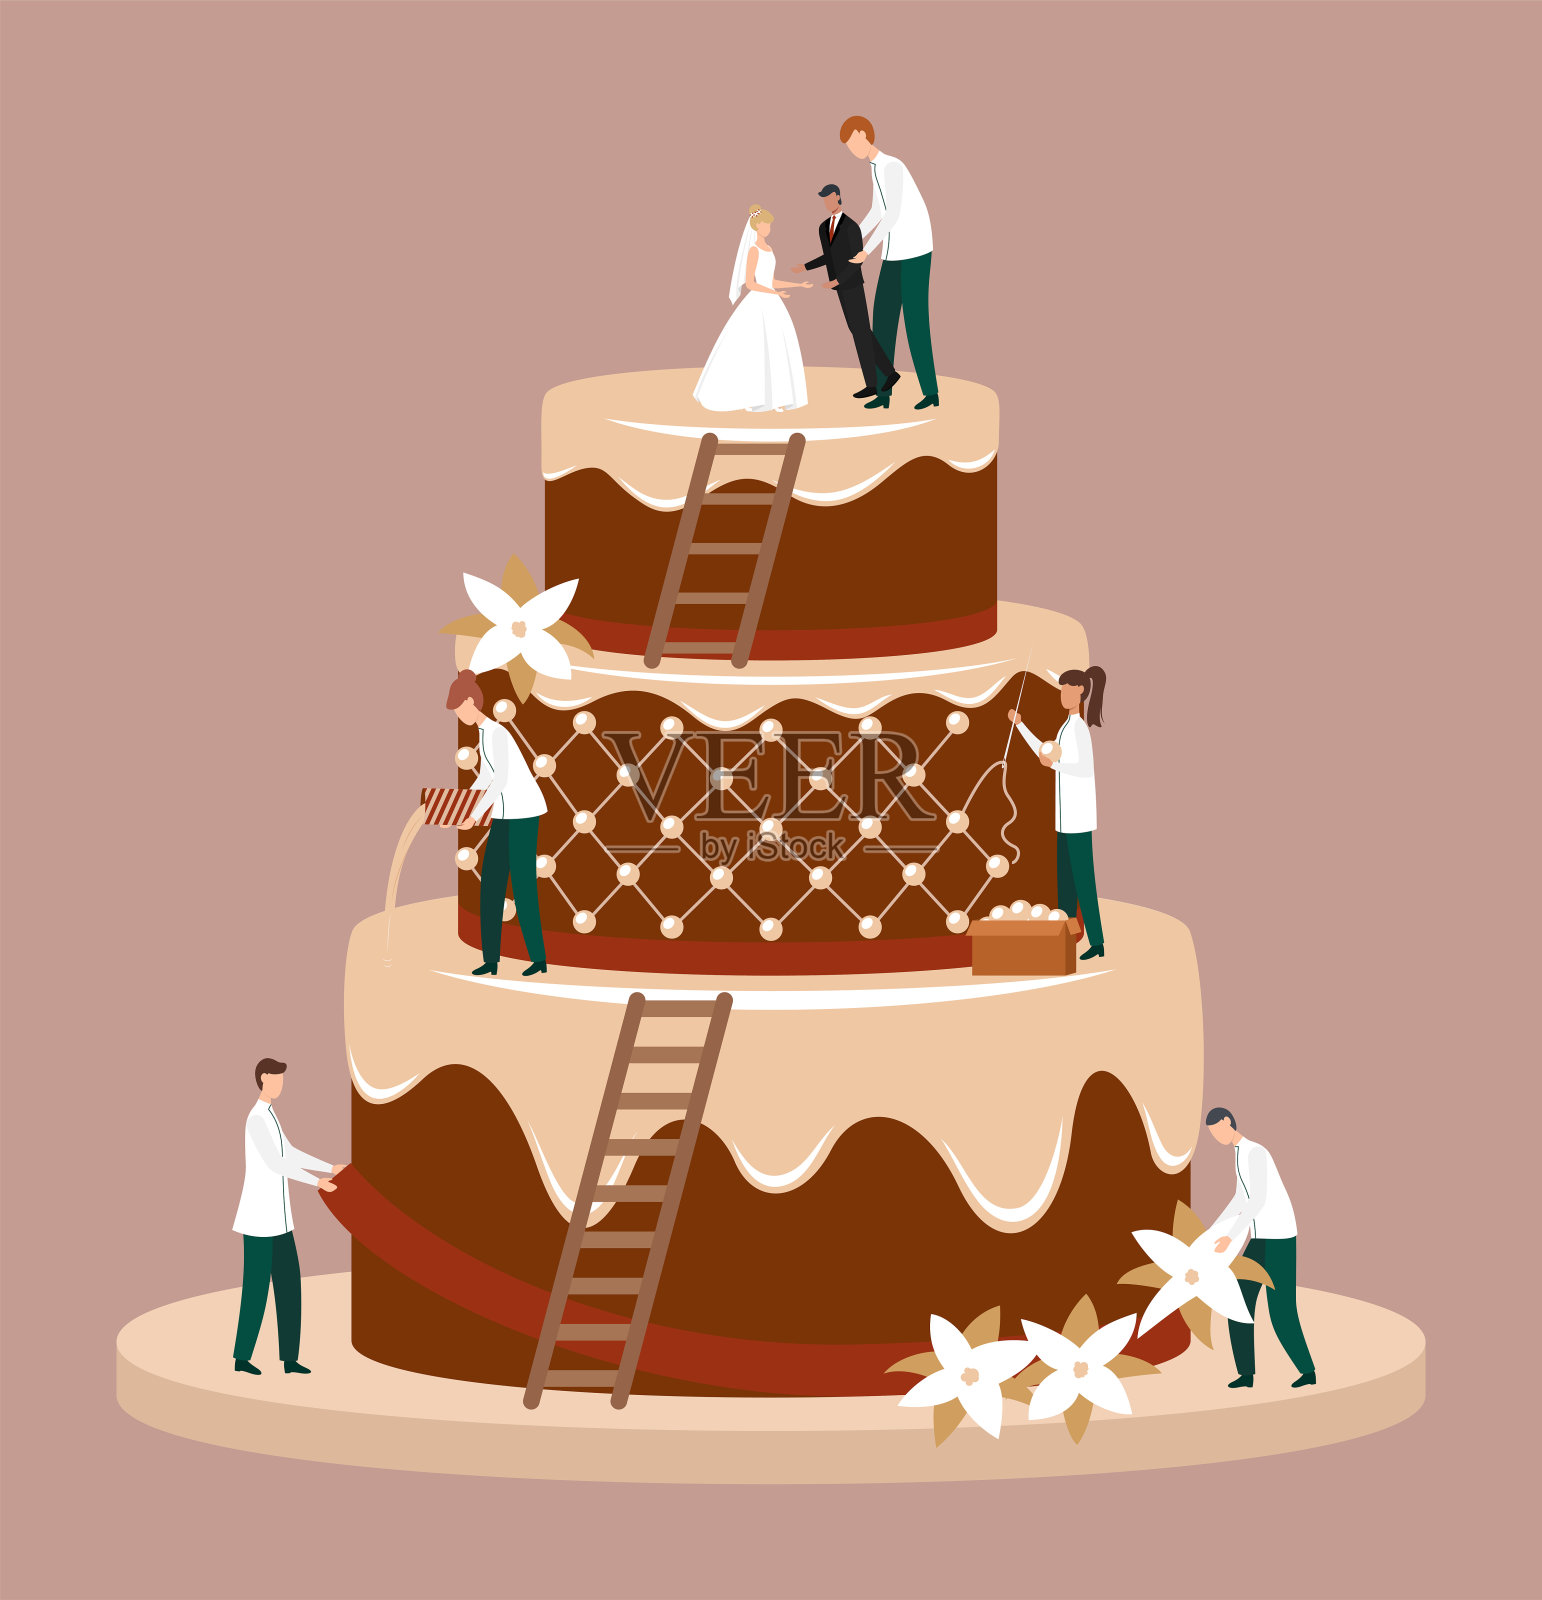 卡通色彩人物人物婚礼蛋糕概念。向量设计元素图片